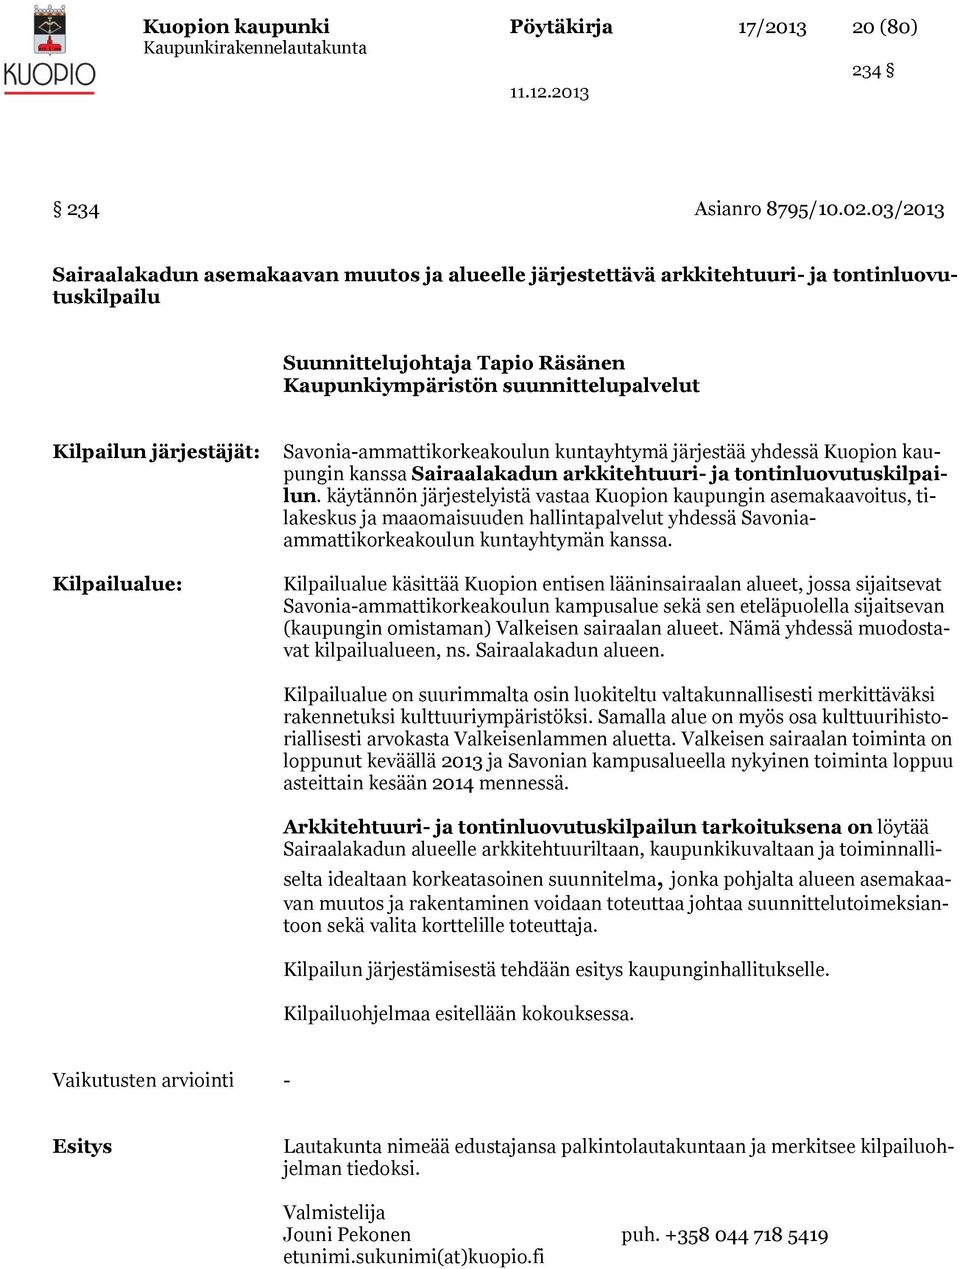 järjestäjät: Kilpailualue: Savonia-ammattikorkeakoulun kuntayhtymä järjestää yhdessä Kuopion kaupungin kanssa Sairaalakadun arkkitehtuuri- ja tontinluovutuskilpailun.